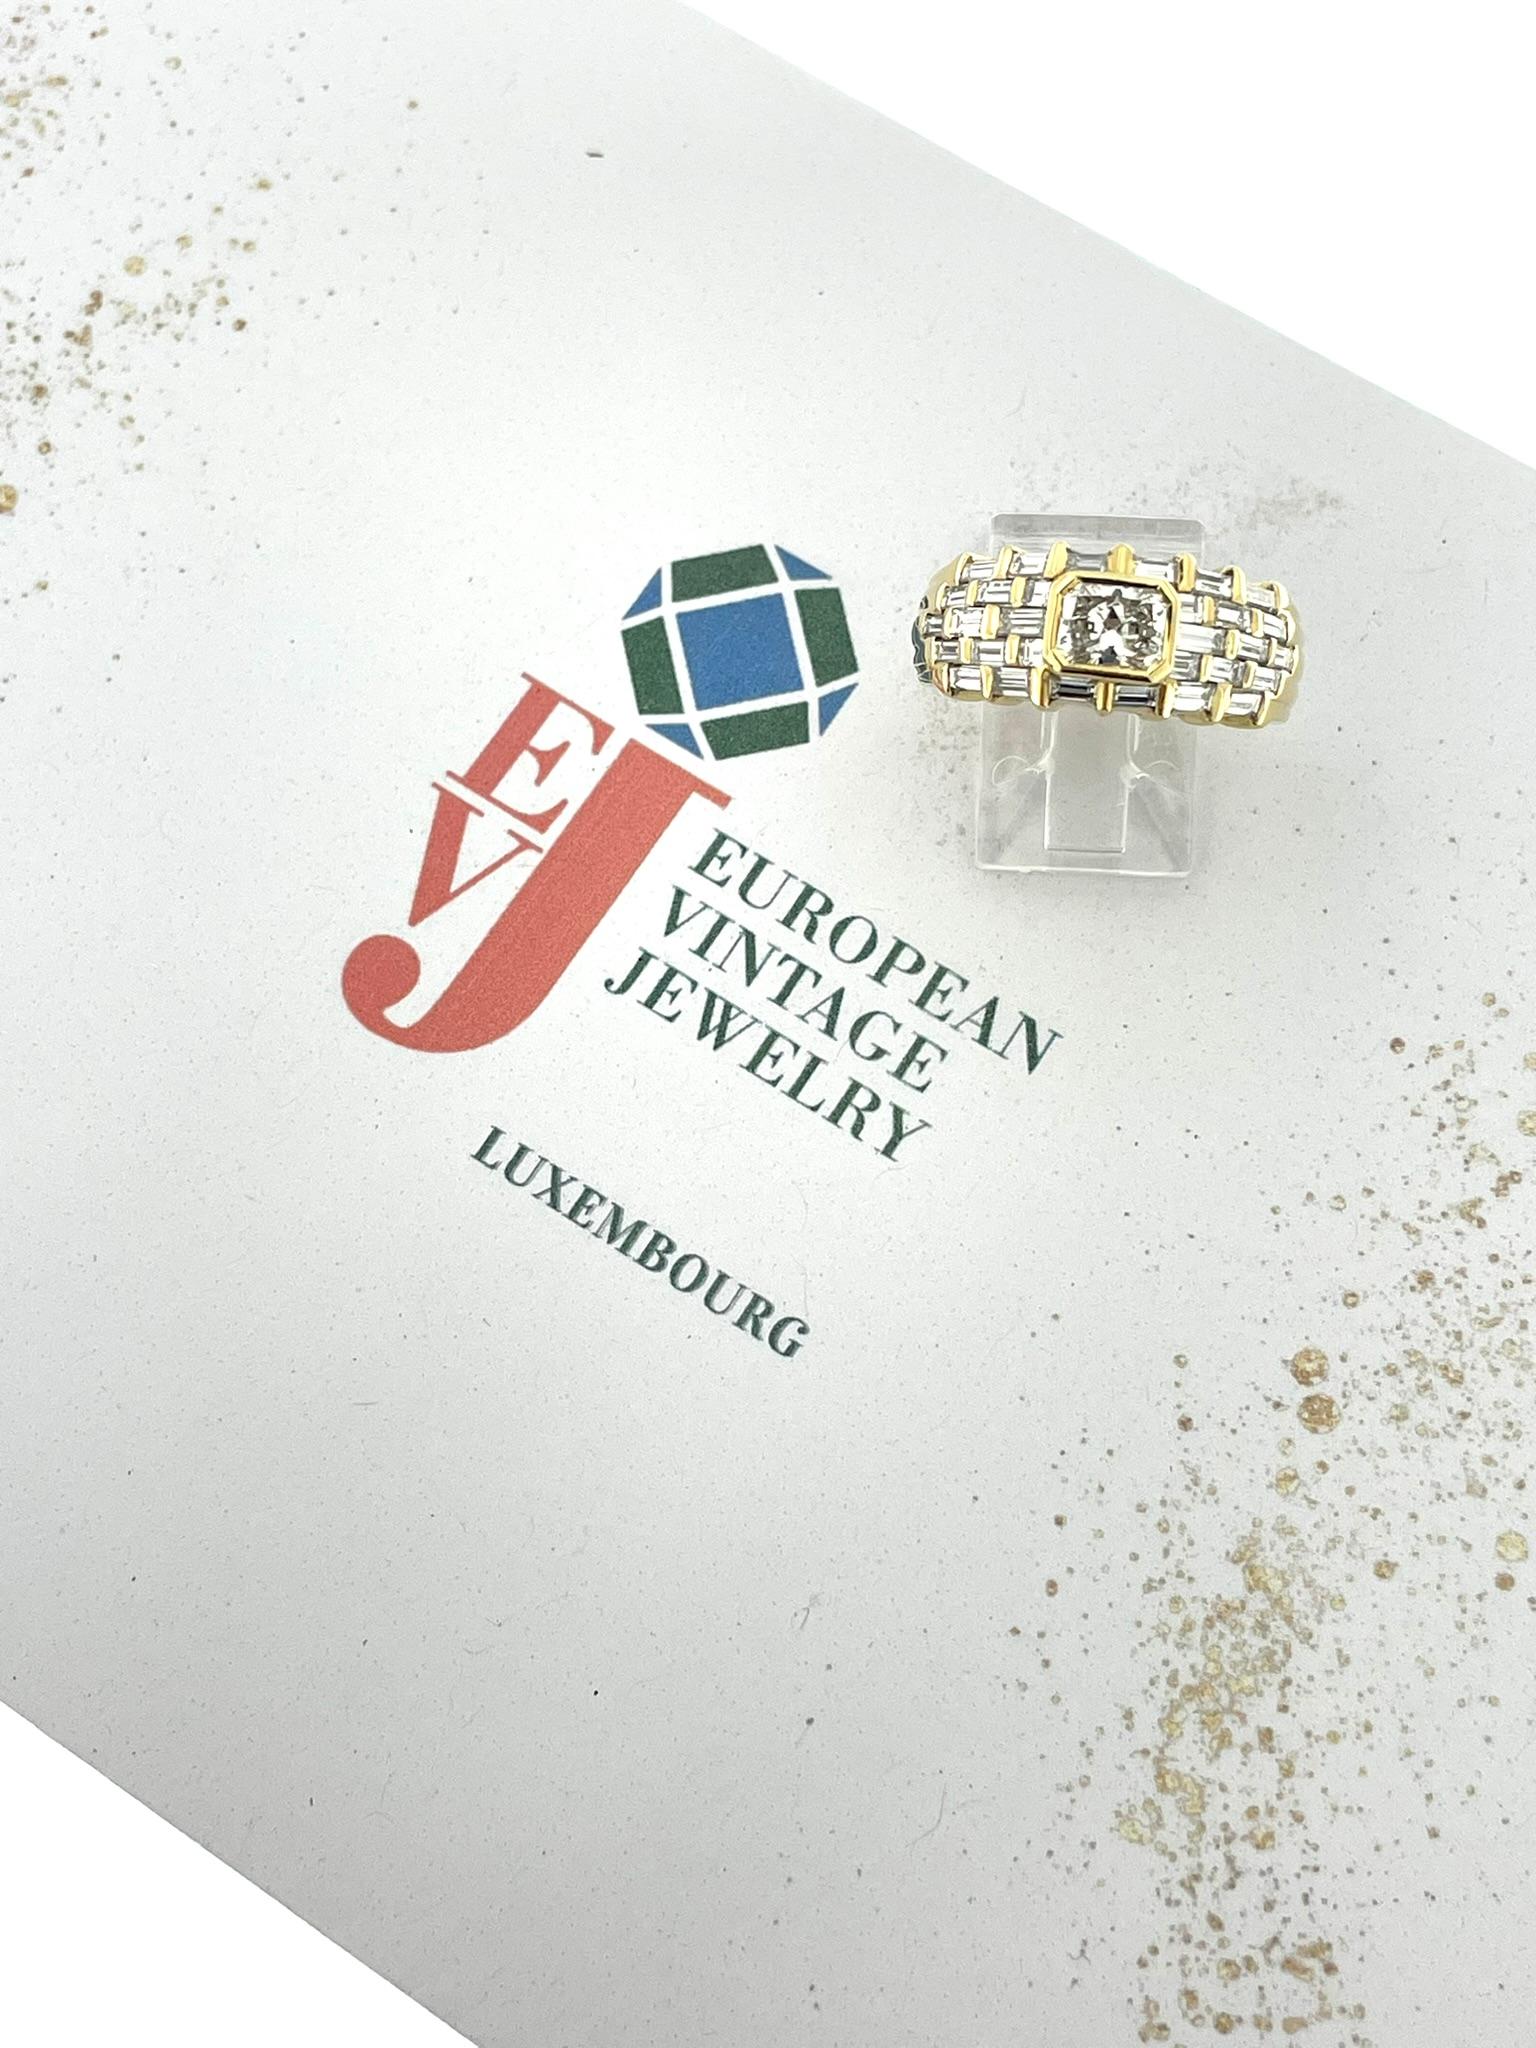 Der HRD-zertifizierte Gelbgold-Cocktailring ist ein glanzvolles Zeugnis von Luxus und Raffinesse. Dieser aus 18-karätigem Gelbgold gefertigte Ring strahlt Wärme und Eleganz aus, was ihn zu einem herausragenden Stück in jeder Sammlung macht.

Im